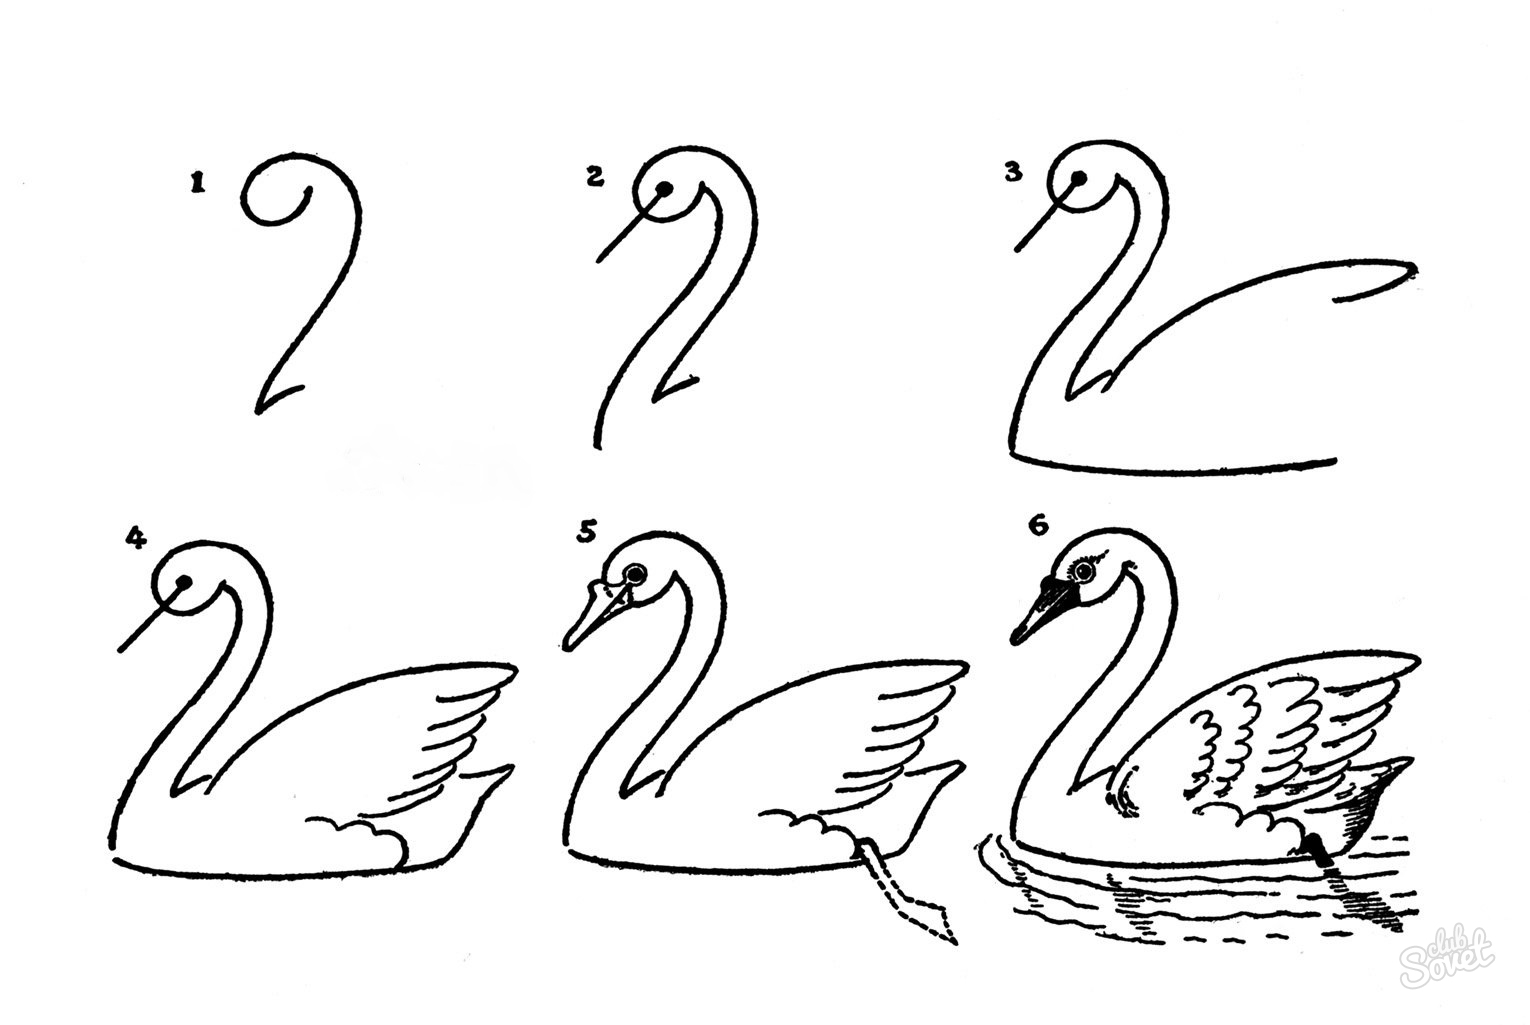 Как нарисовать лебедя красиво и правдоподобно?